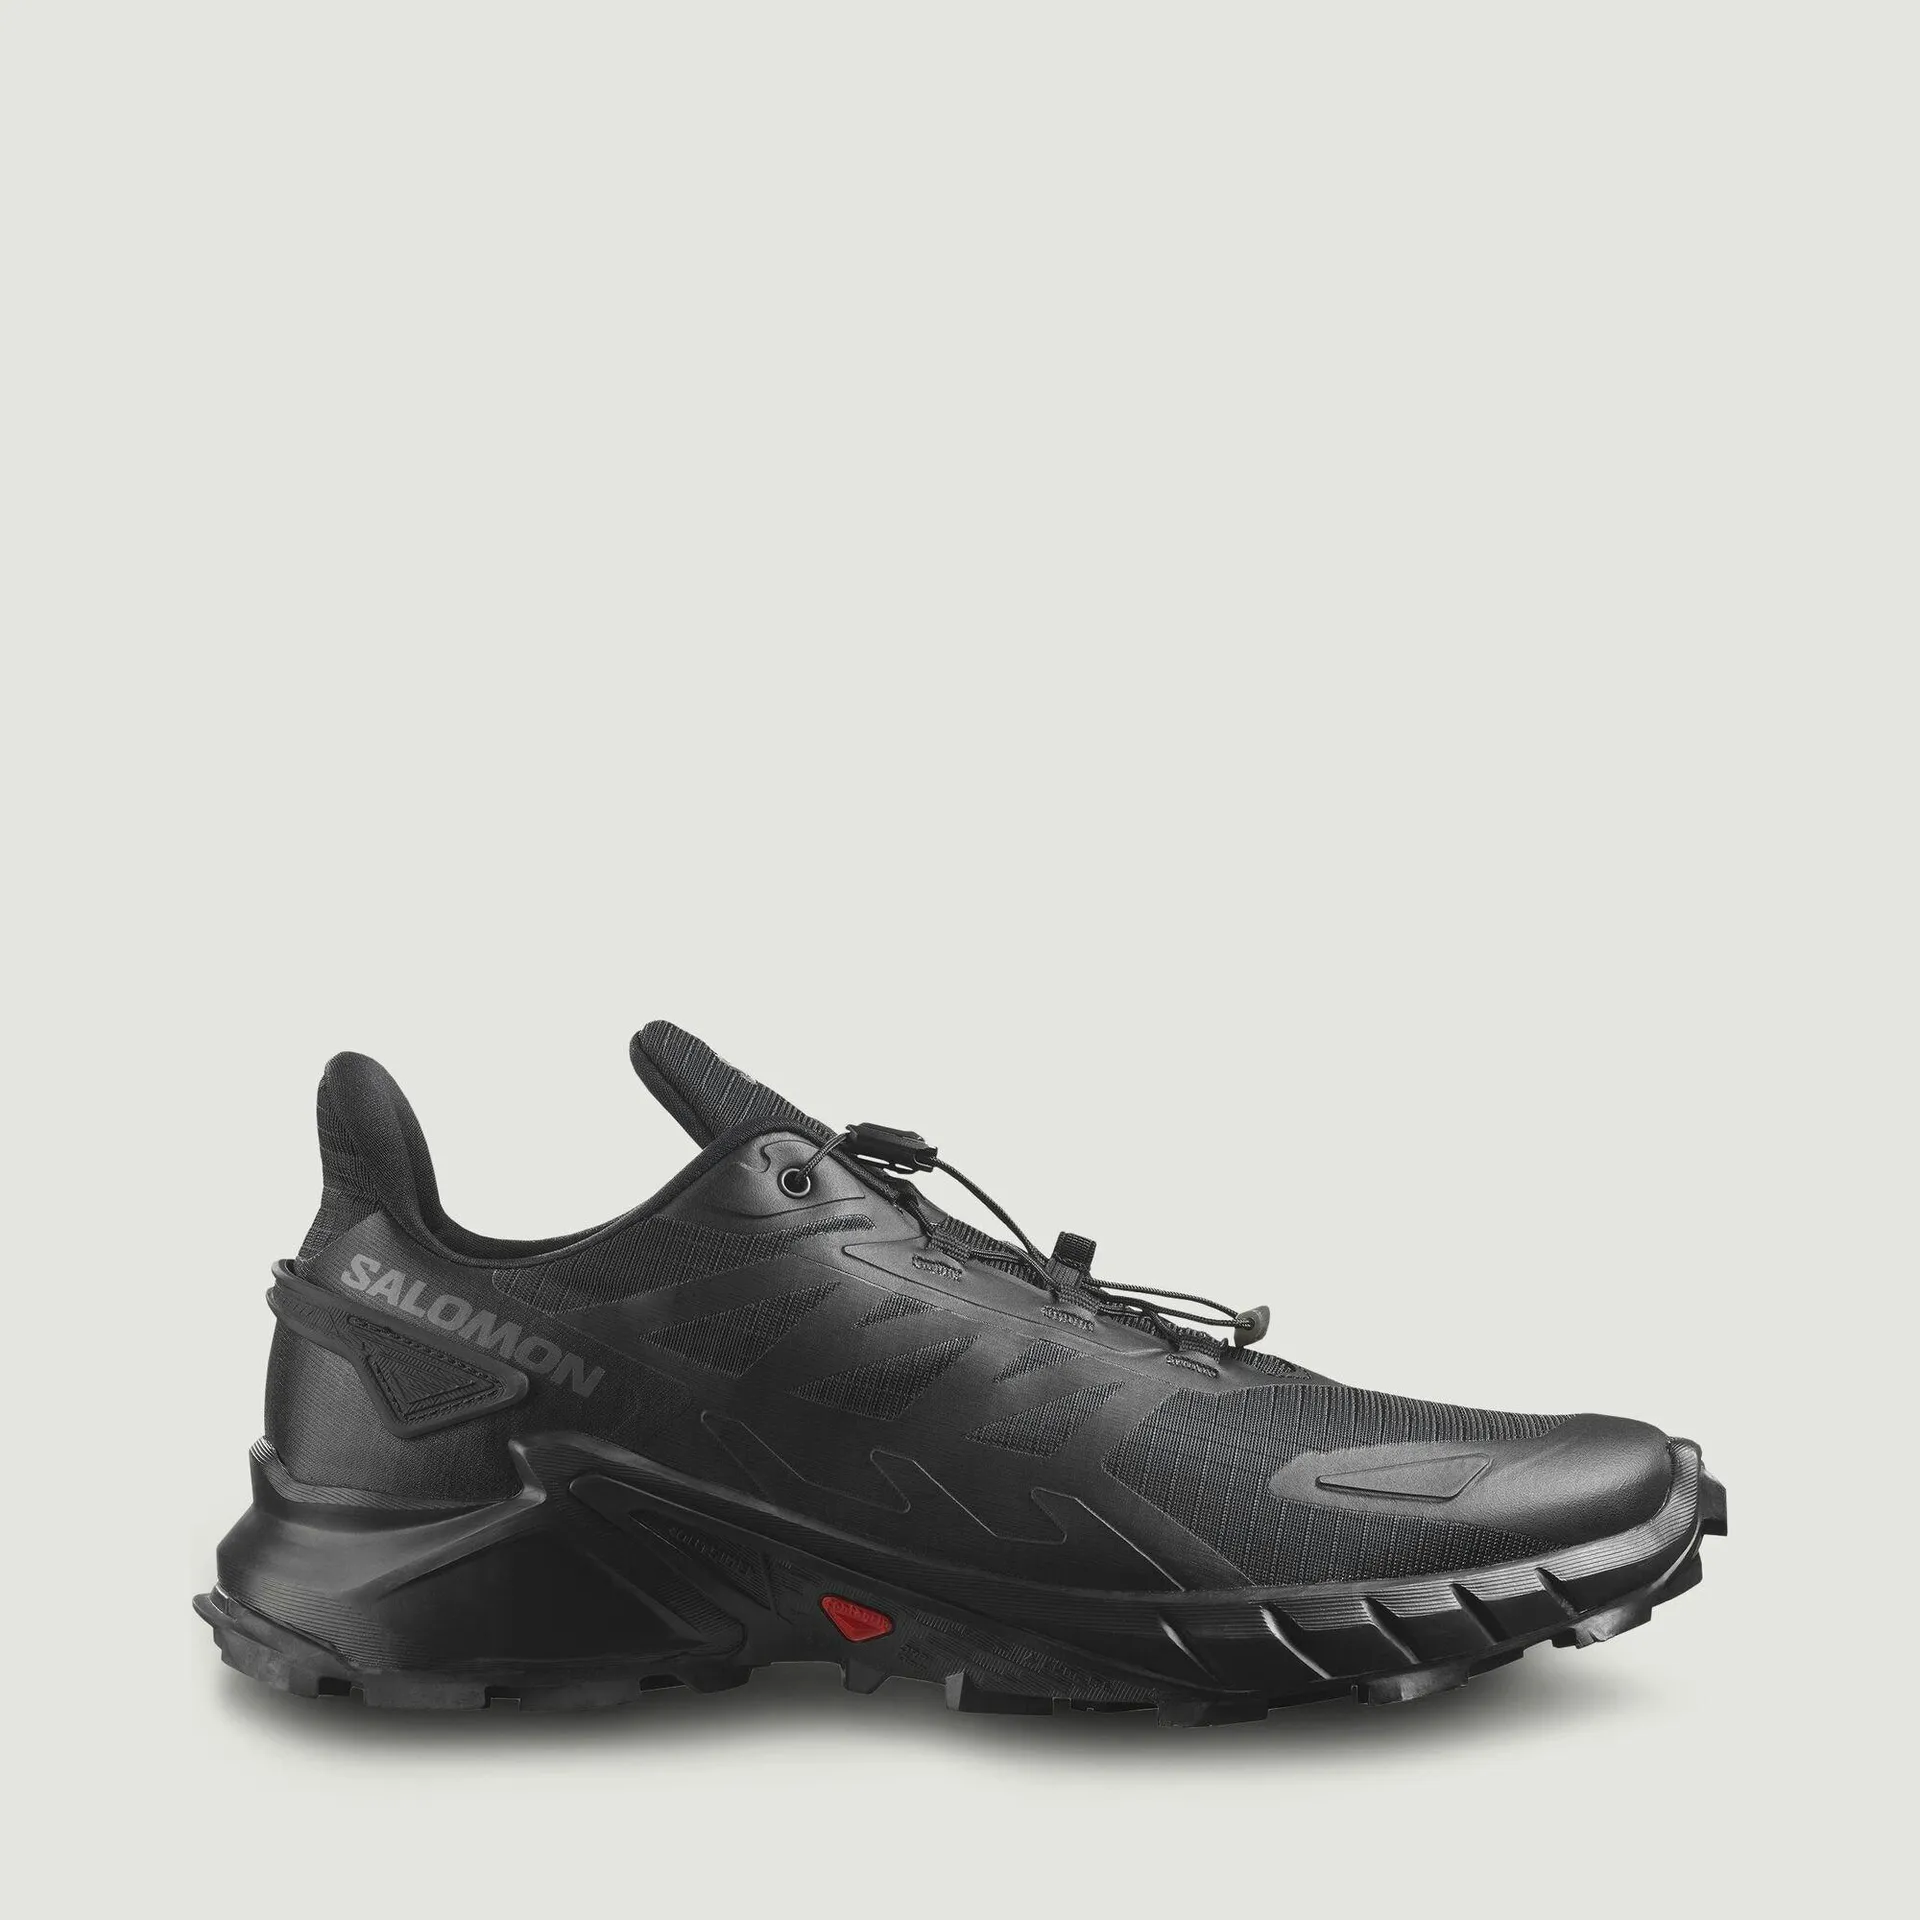 Salomon Men’s SuperCross 4 Trail Running Shoes